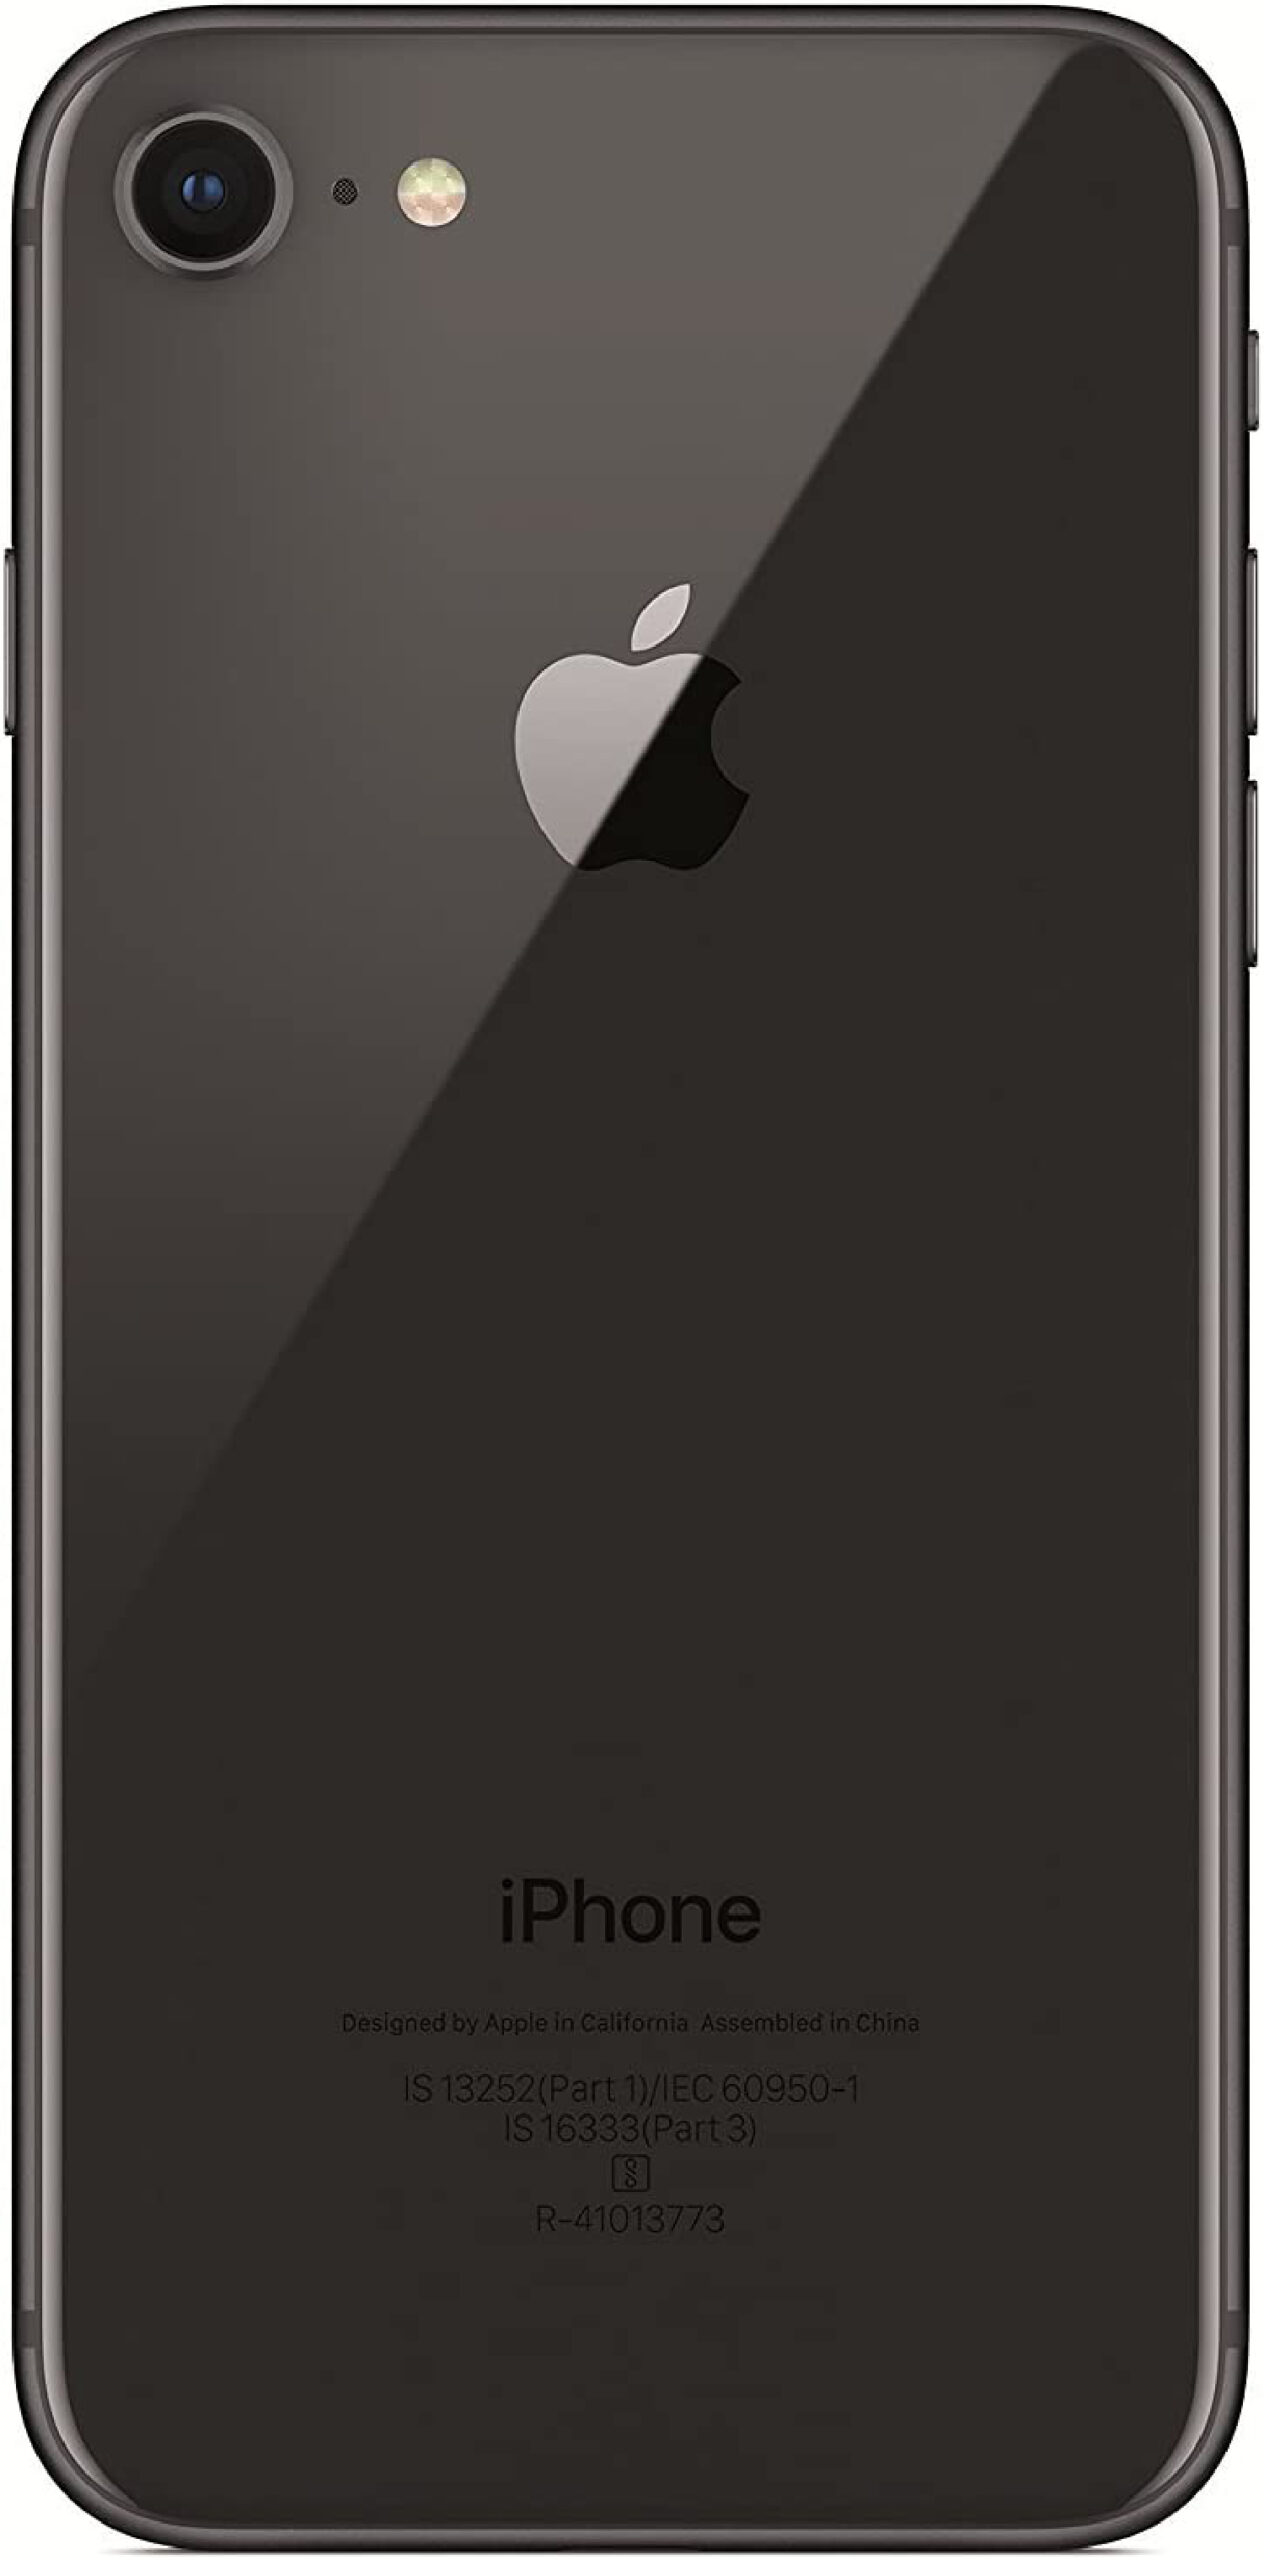 Si necesita un teléfono Apple barato rápidamente, el iPhone 8 es una gran compra